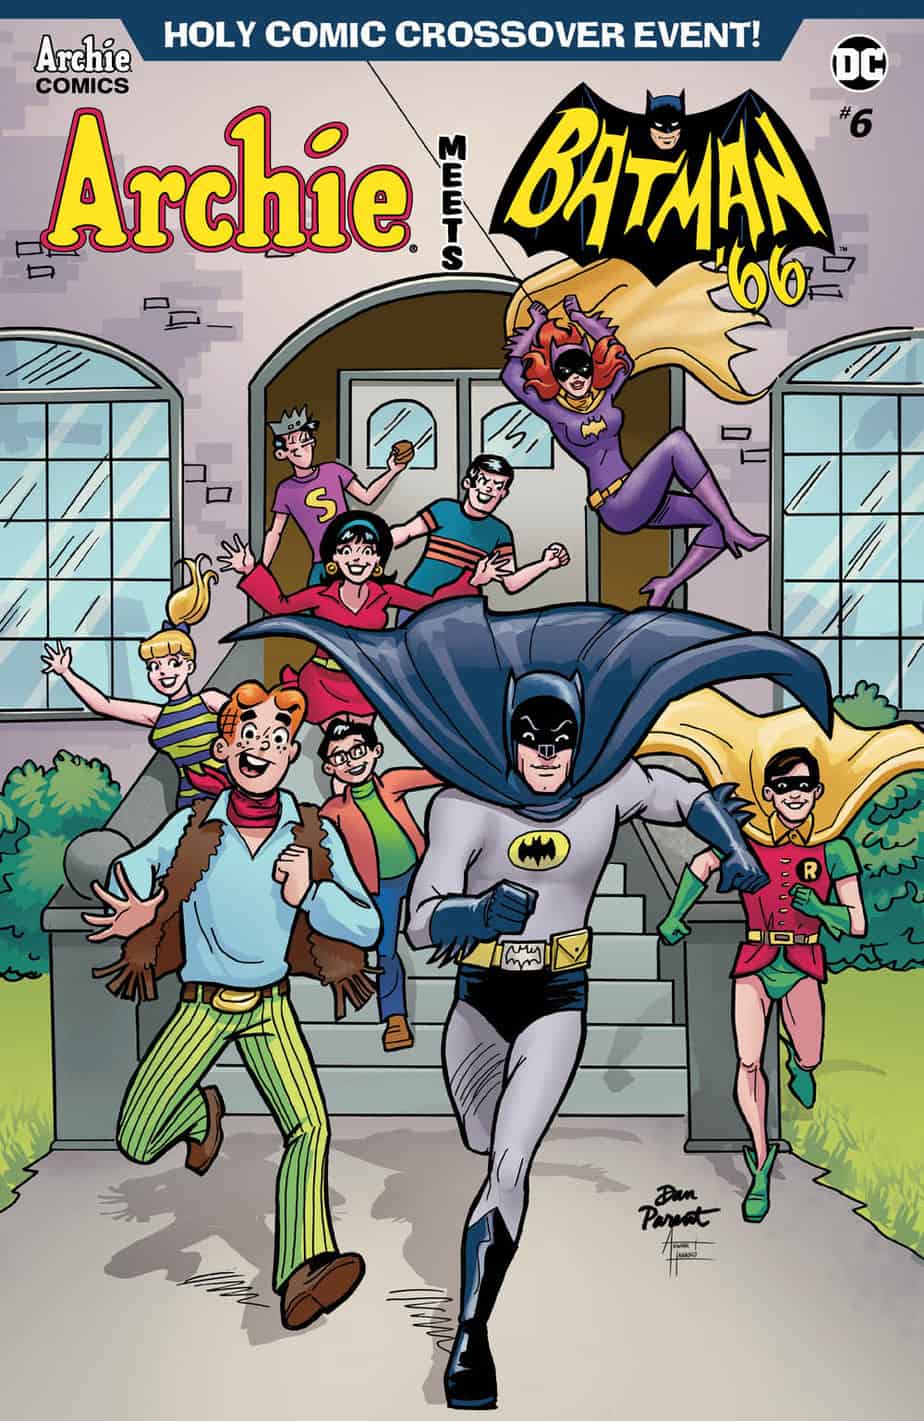 Archie Meets Batman '66 #6 - Variant Cover by Dan Parent